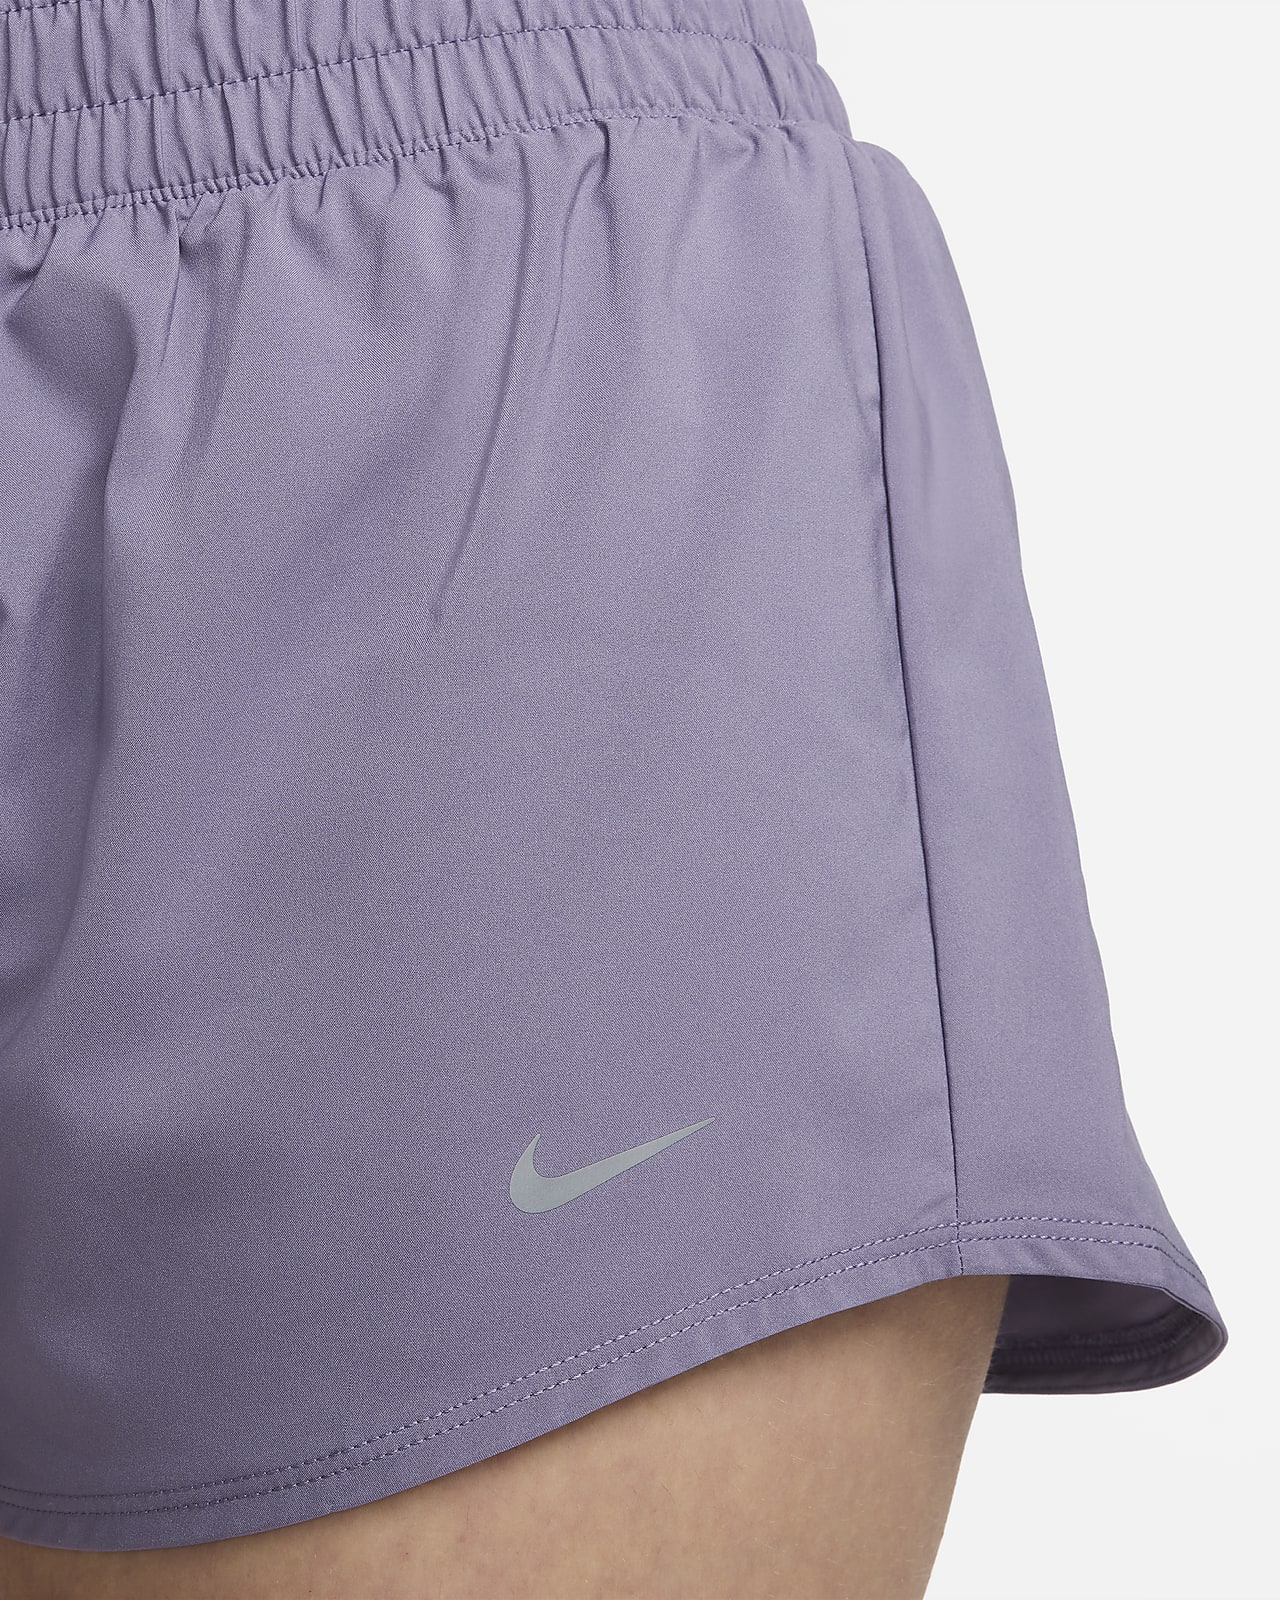 Shorts con forro de ropa interior Dri-FIT de tiro medio de 8 cm para mujer  Nike One